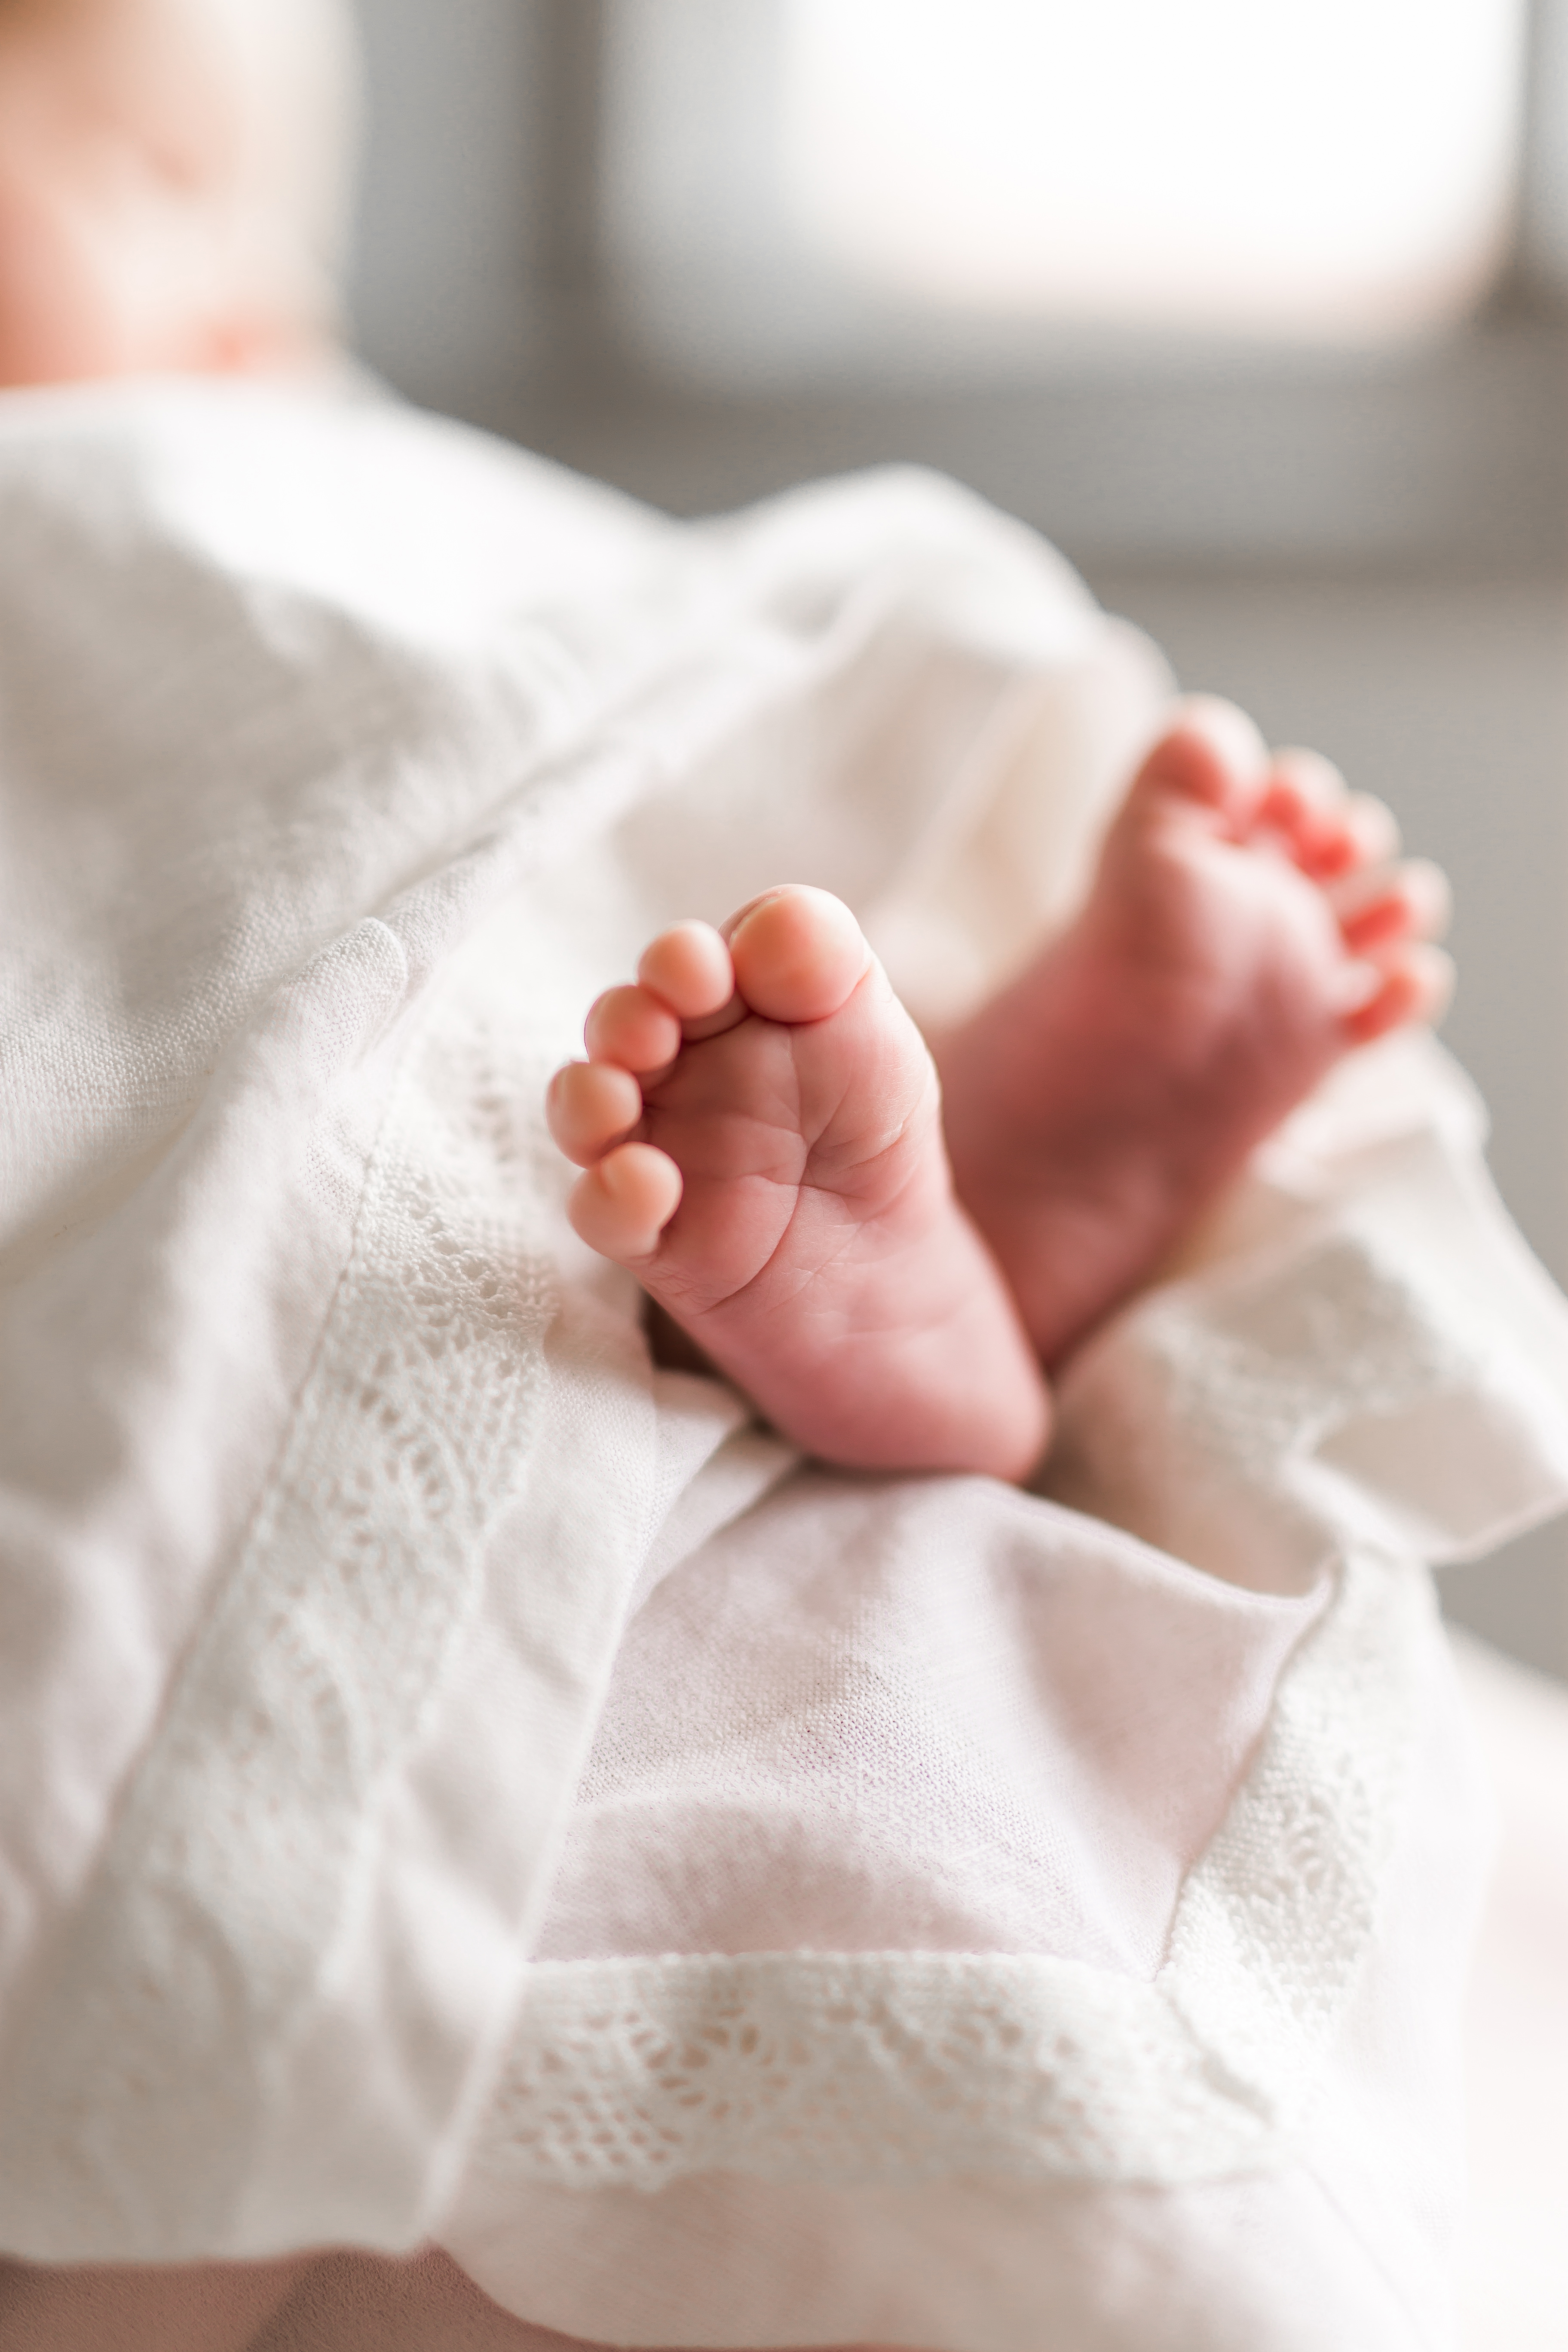 Vauvan jalat näkyvät vaalean kankaan alta.